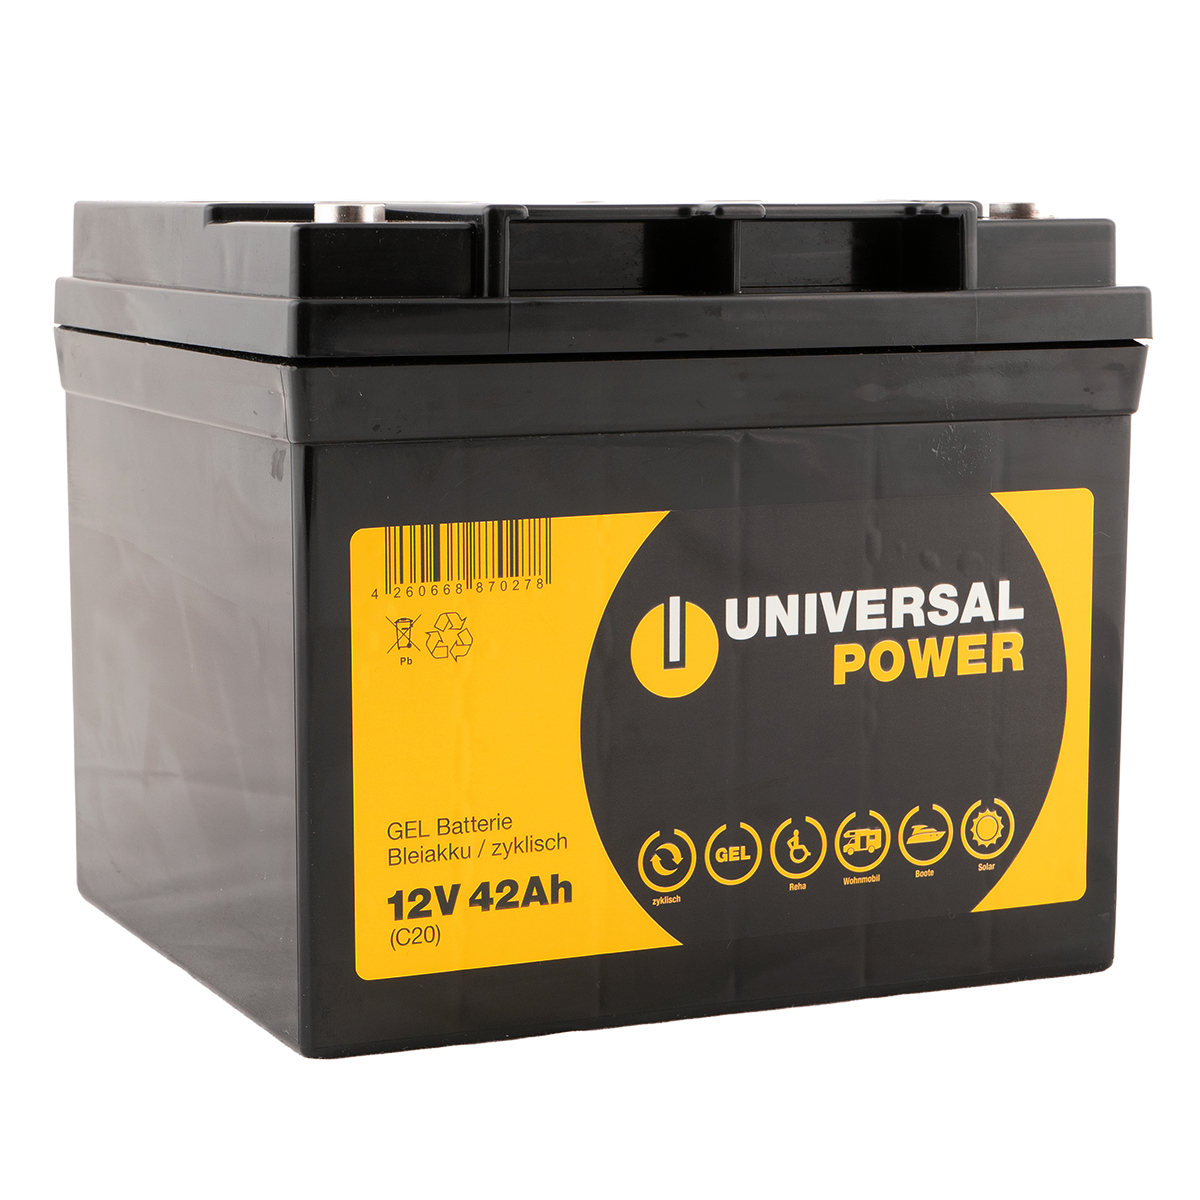 Universal Power UPG12-42 Gel Batterie 12V 42Ah für E-Mobil, Rollstuhl, Scooter